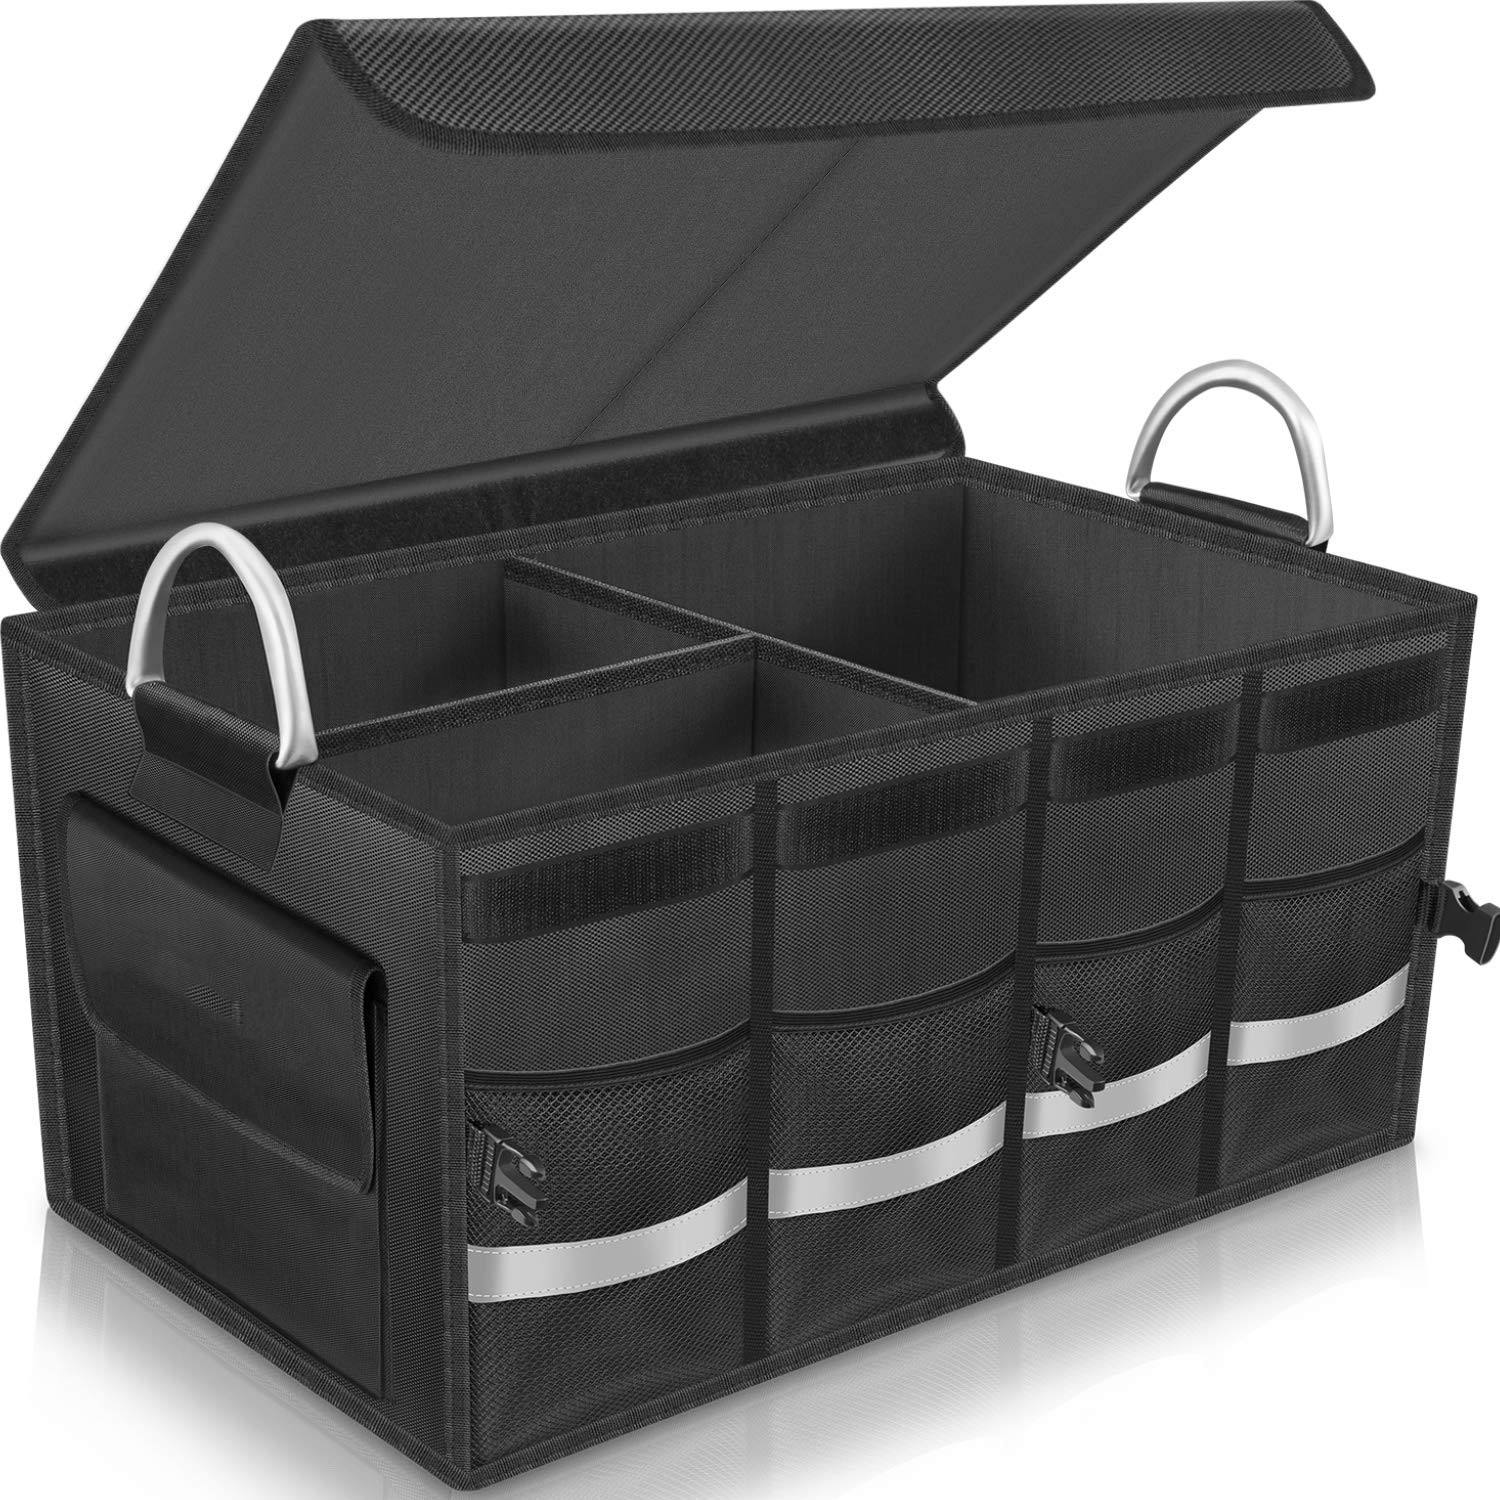 Organizador de carga para maletero, almacenamiento duradero, múltiples compartimentos plegables con mango de aleación de aluminio, tira reflectante